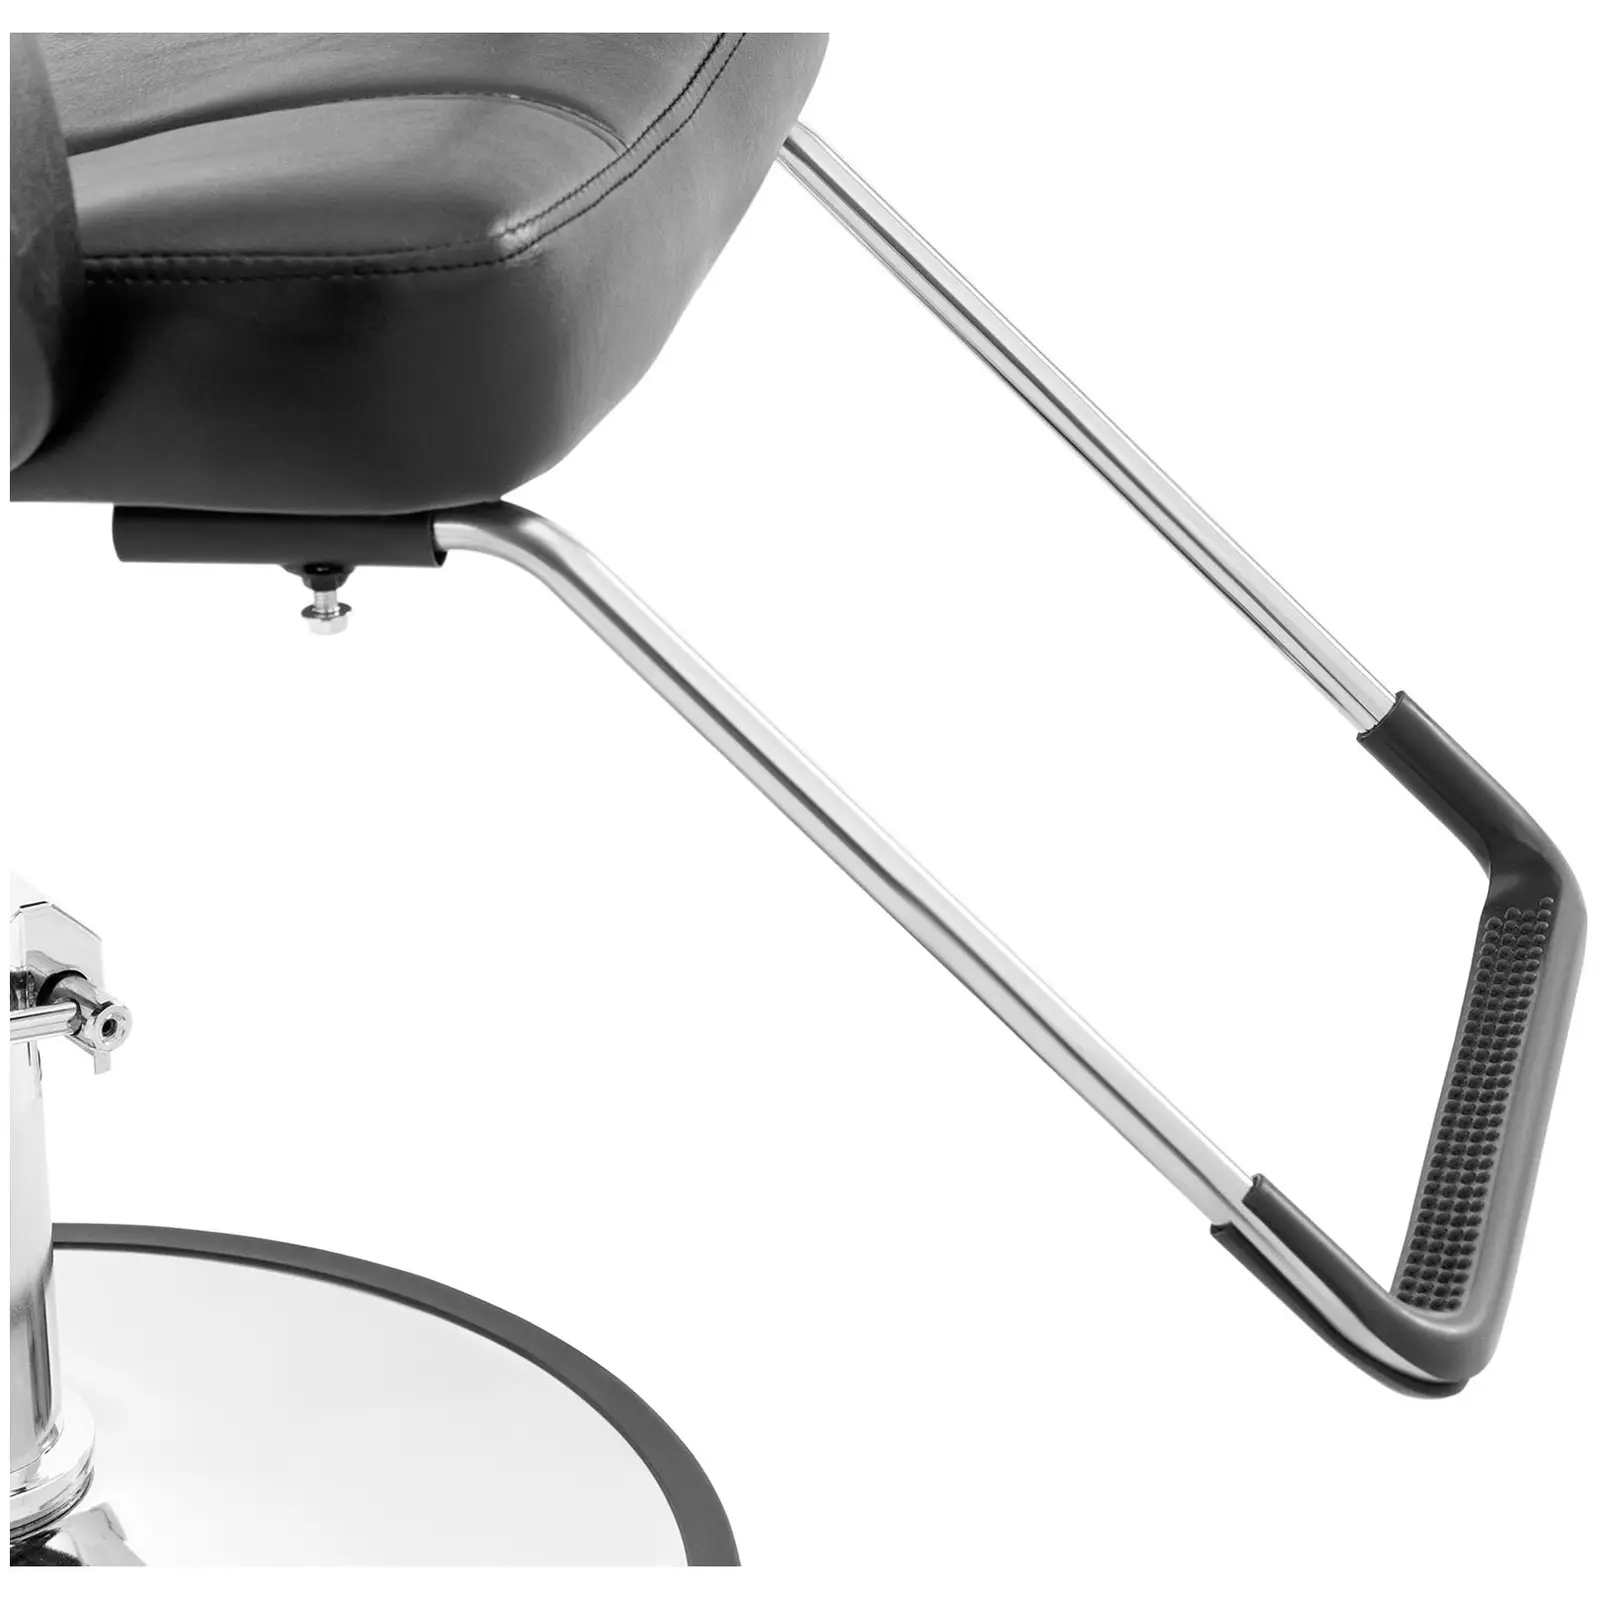 Cadeira de cabeleireiro - apoio para os pés - 50 - 64 cm - 170 kg - em preto